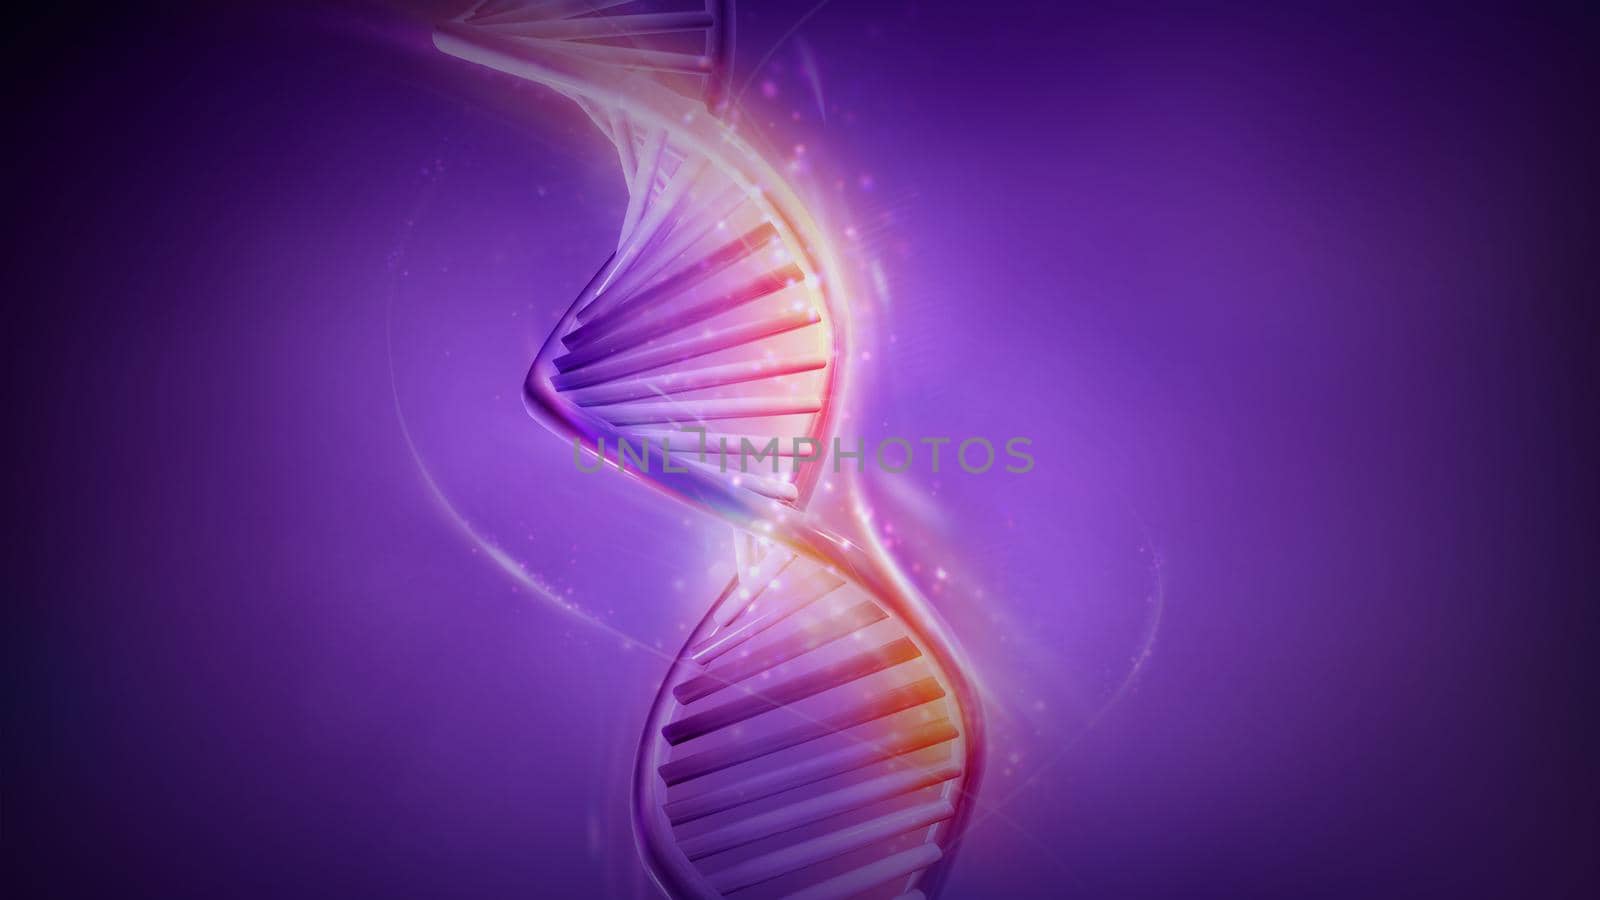 Artificial model of DNA strand on violet background. 3D render.